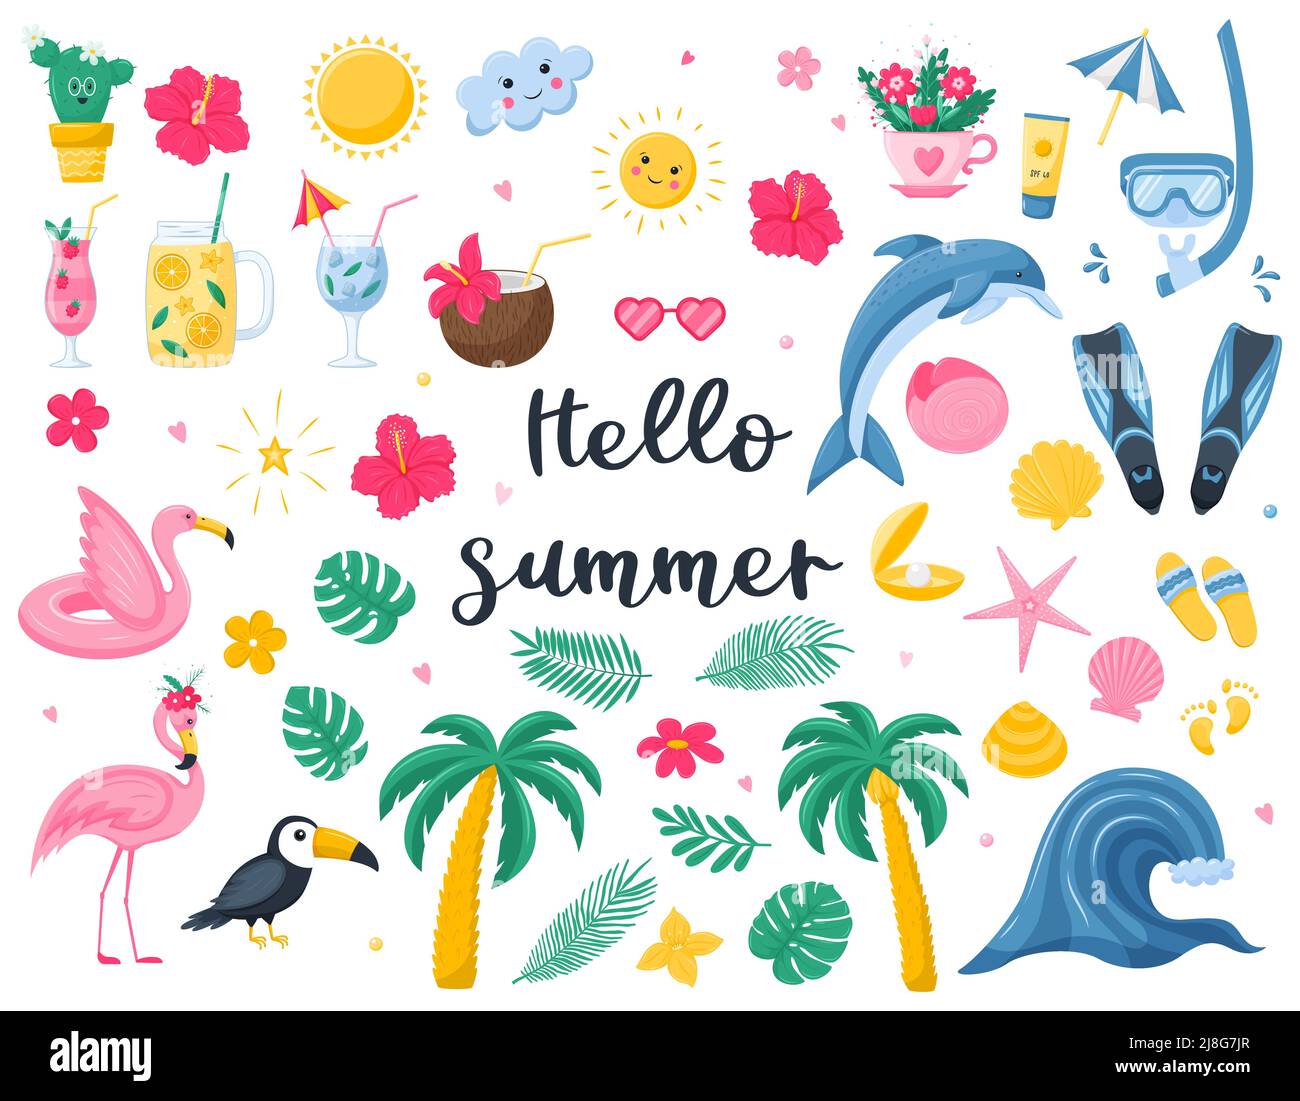 Eine Reihe von hellen Sommer dekorativen Elementen. Cocktails, botanische Elemente, Meerestiere, Flamingoschalen. Niedliche Vektor-Illustrationen in flachen Cartoon Stock Vektor